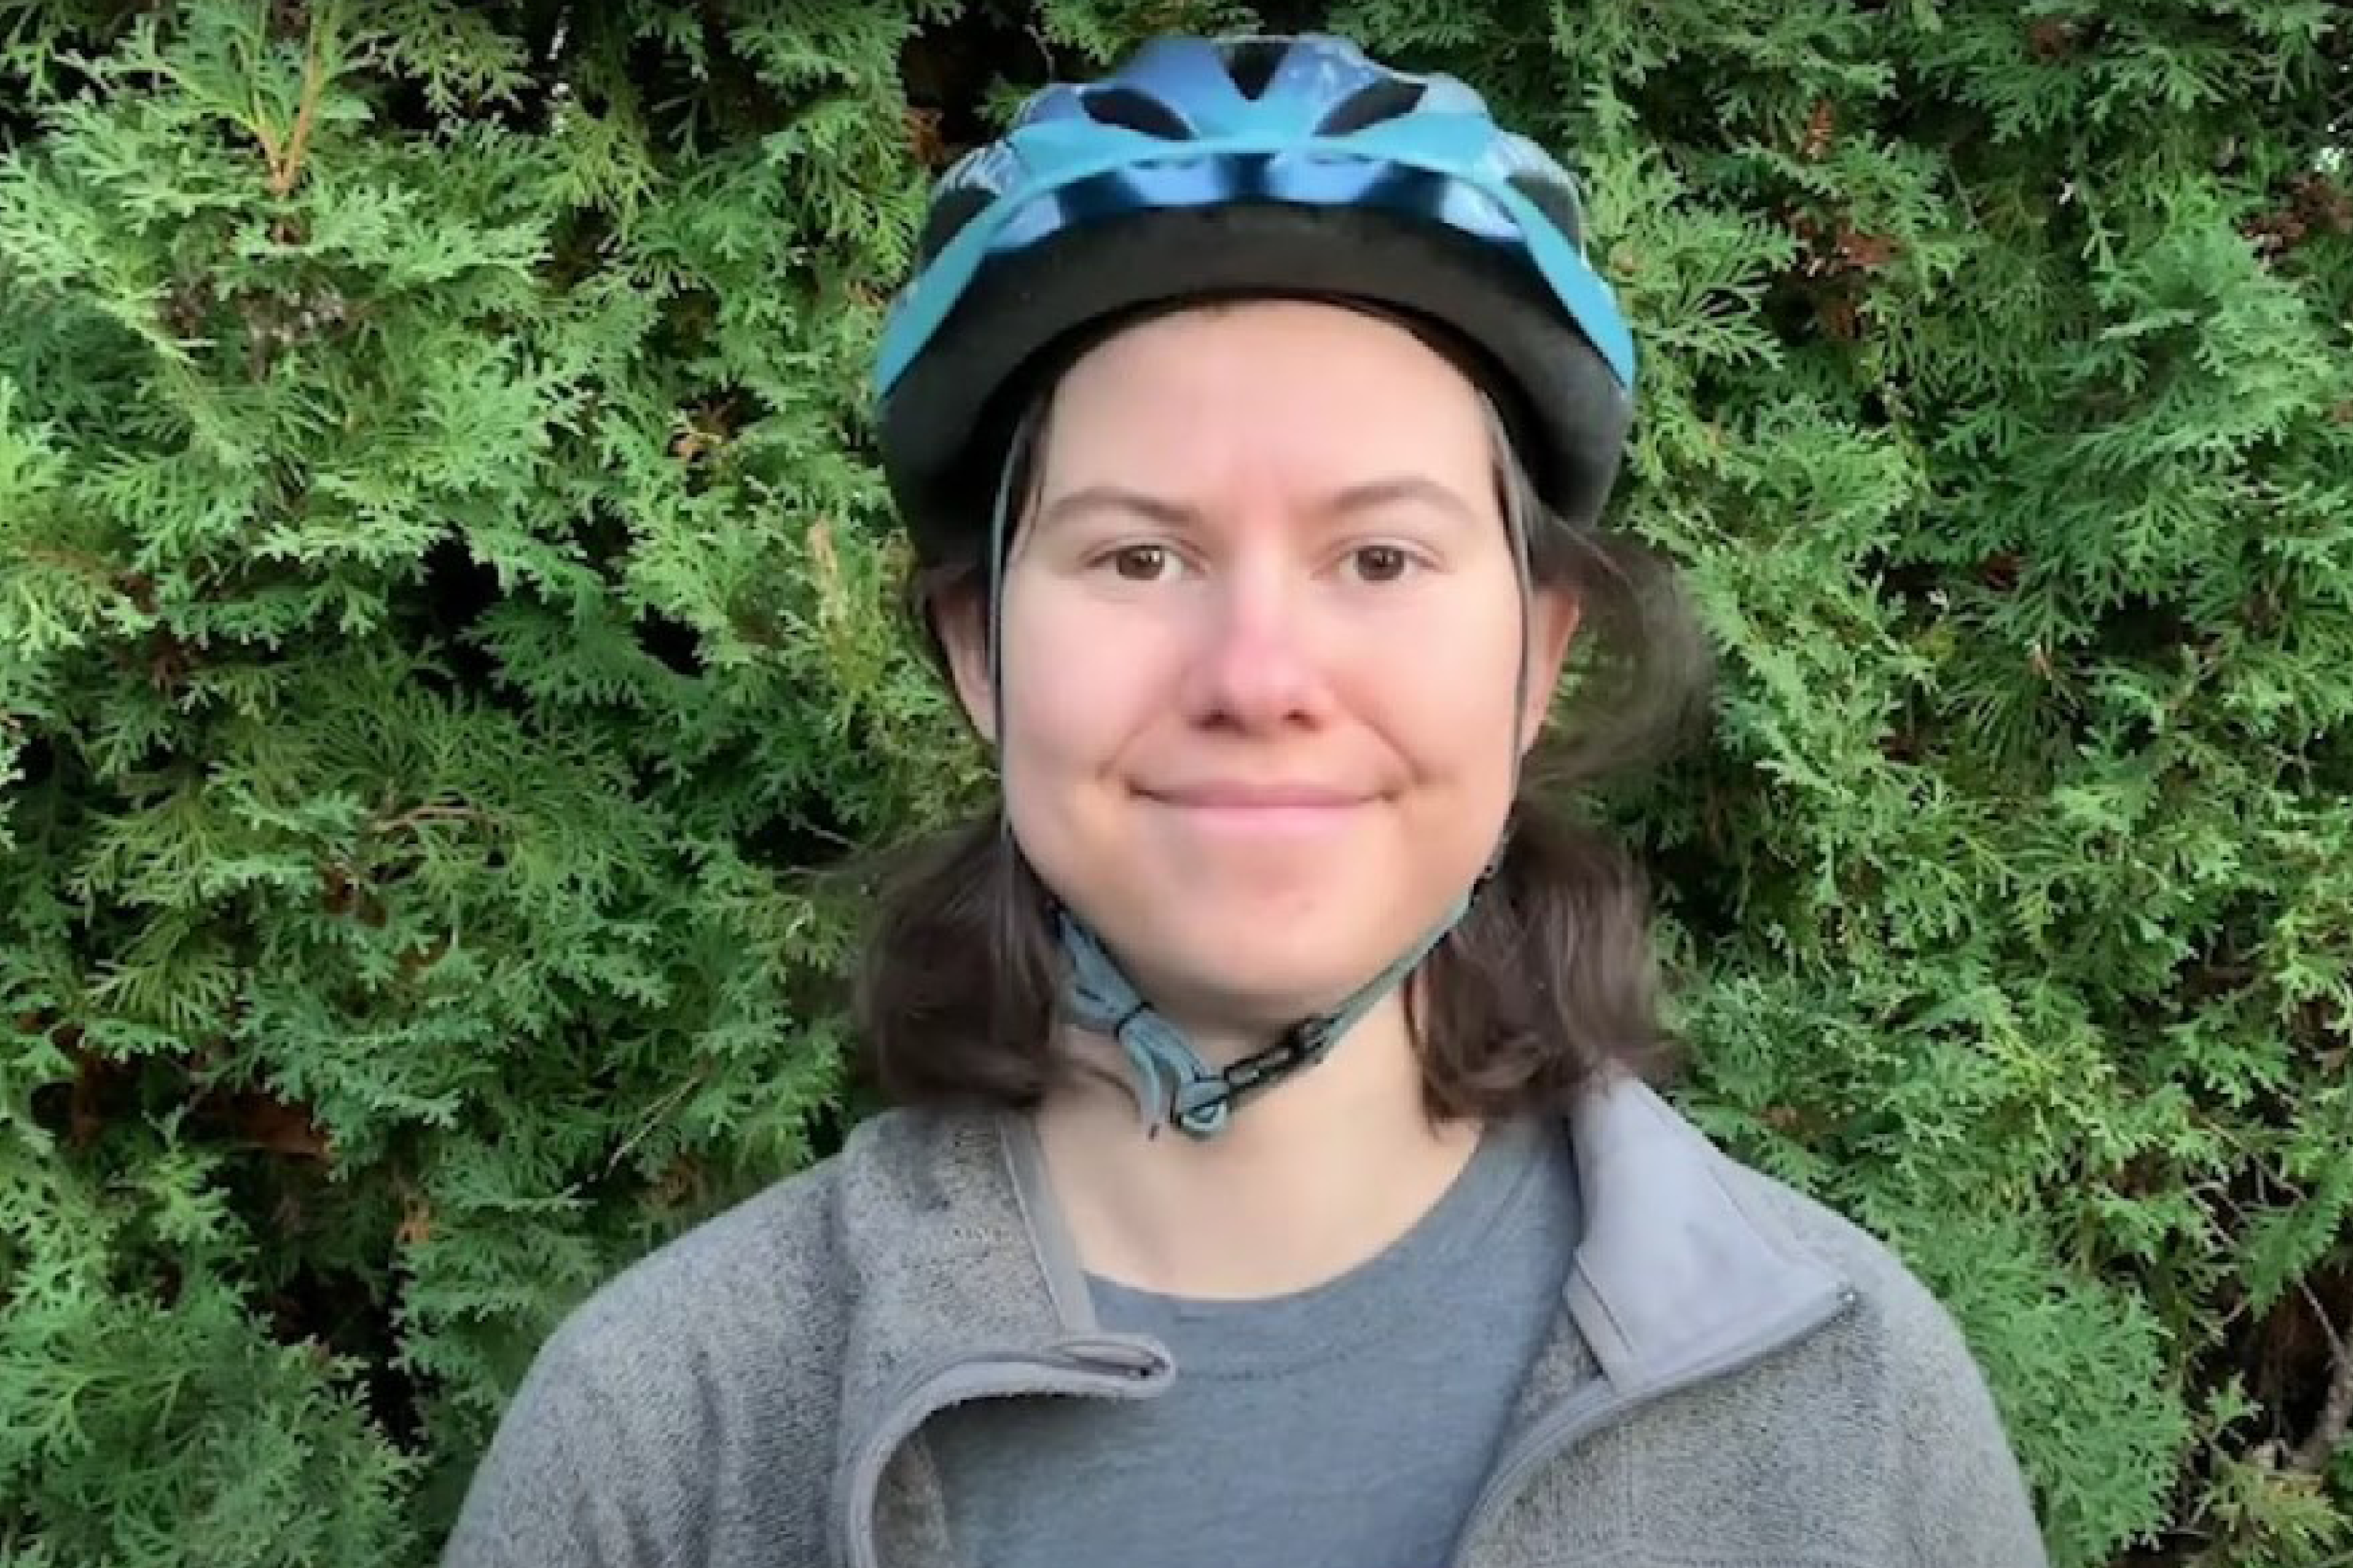 A woman wearing a bike helmet.